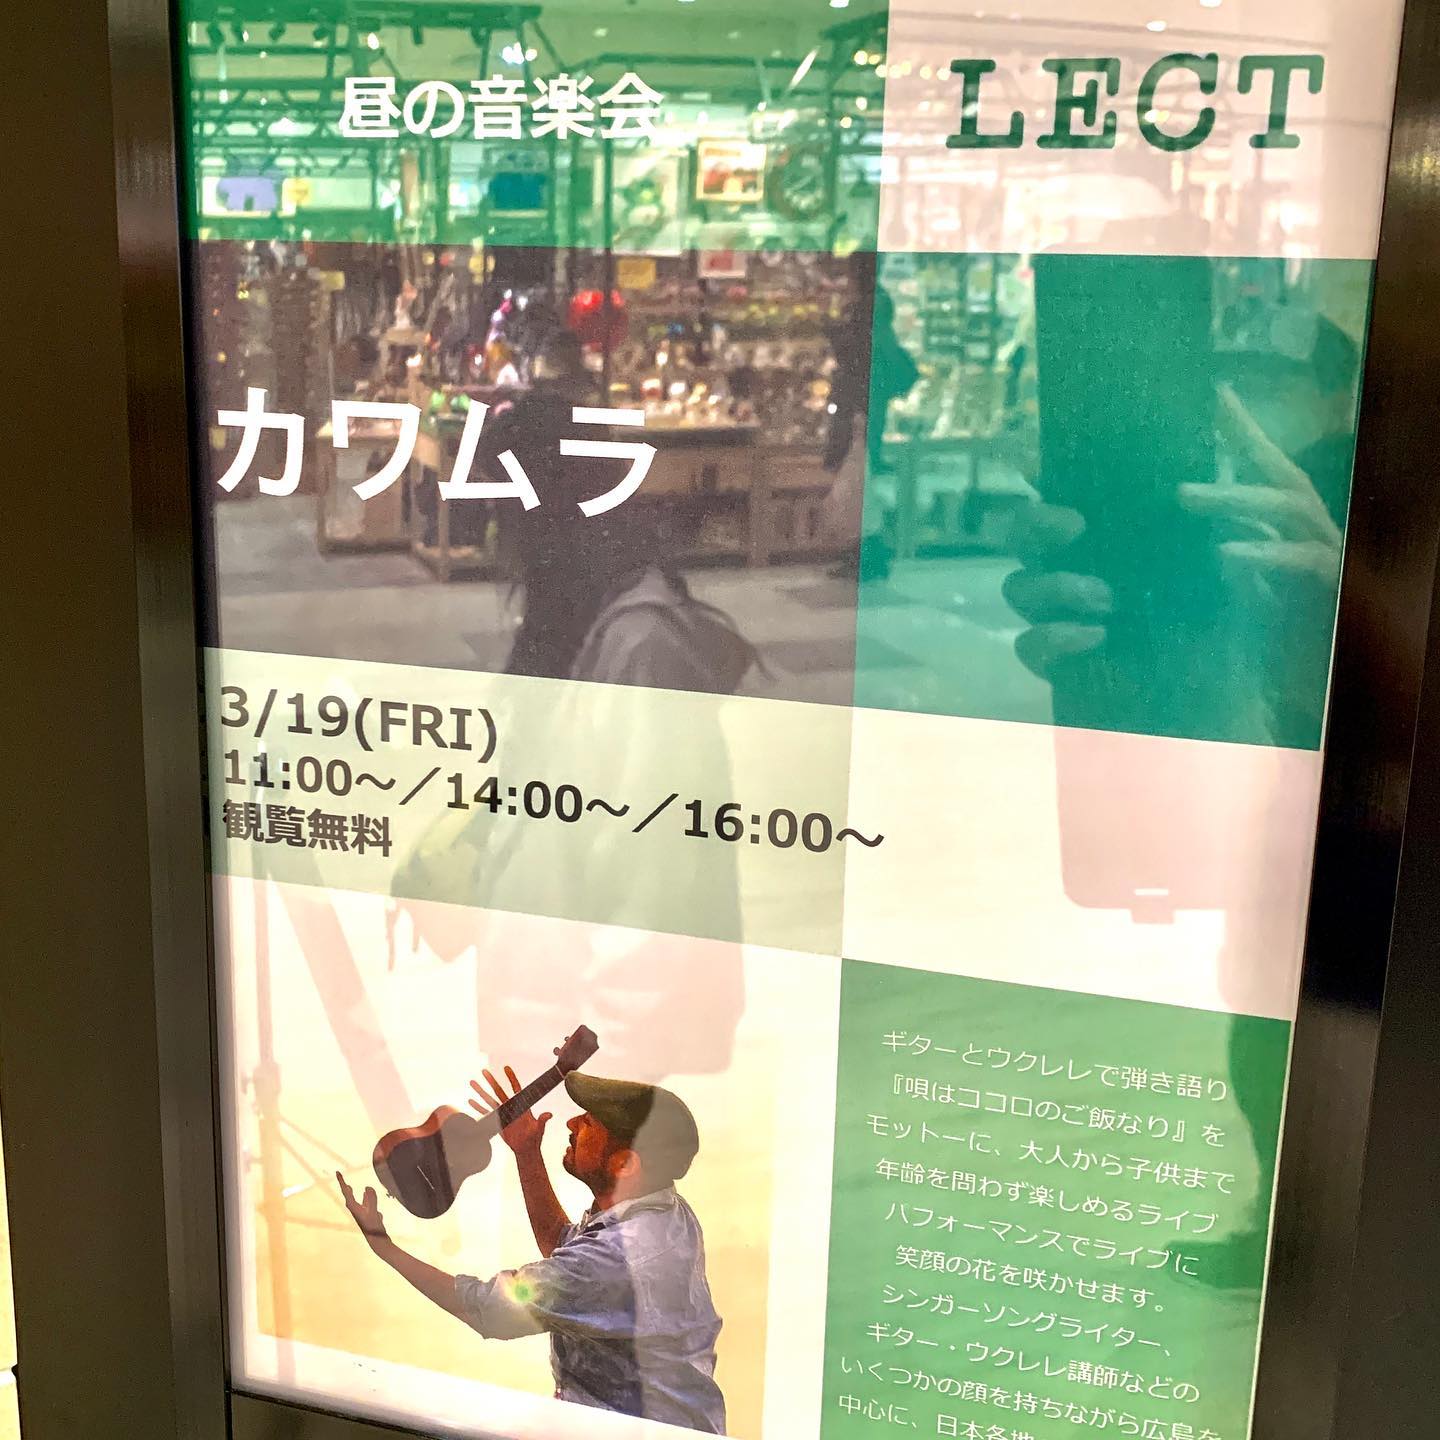 明日、LECTで演奏しまーす。今回は歌無し！つまりウクレレインスト、ソロ弾きだけで演奏します。ソロ弾きだけでライブ一本やるの初めてなんですよ。しかも3ステージも。新たなチャレンジ！いざ！平日の昼間なんですが、、、よかったら聴きに来てくださいー！︎3月19日(金)広島昼の音楽会場所:LECT(広島市西区扇2-1-45)1Fカインズ前イベントスペースにて入場無料11:00〜／14:00〜／16:00〜https://lect.izumi.jp/event/